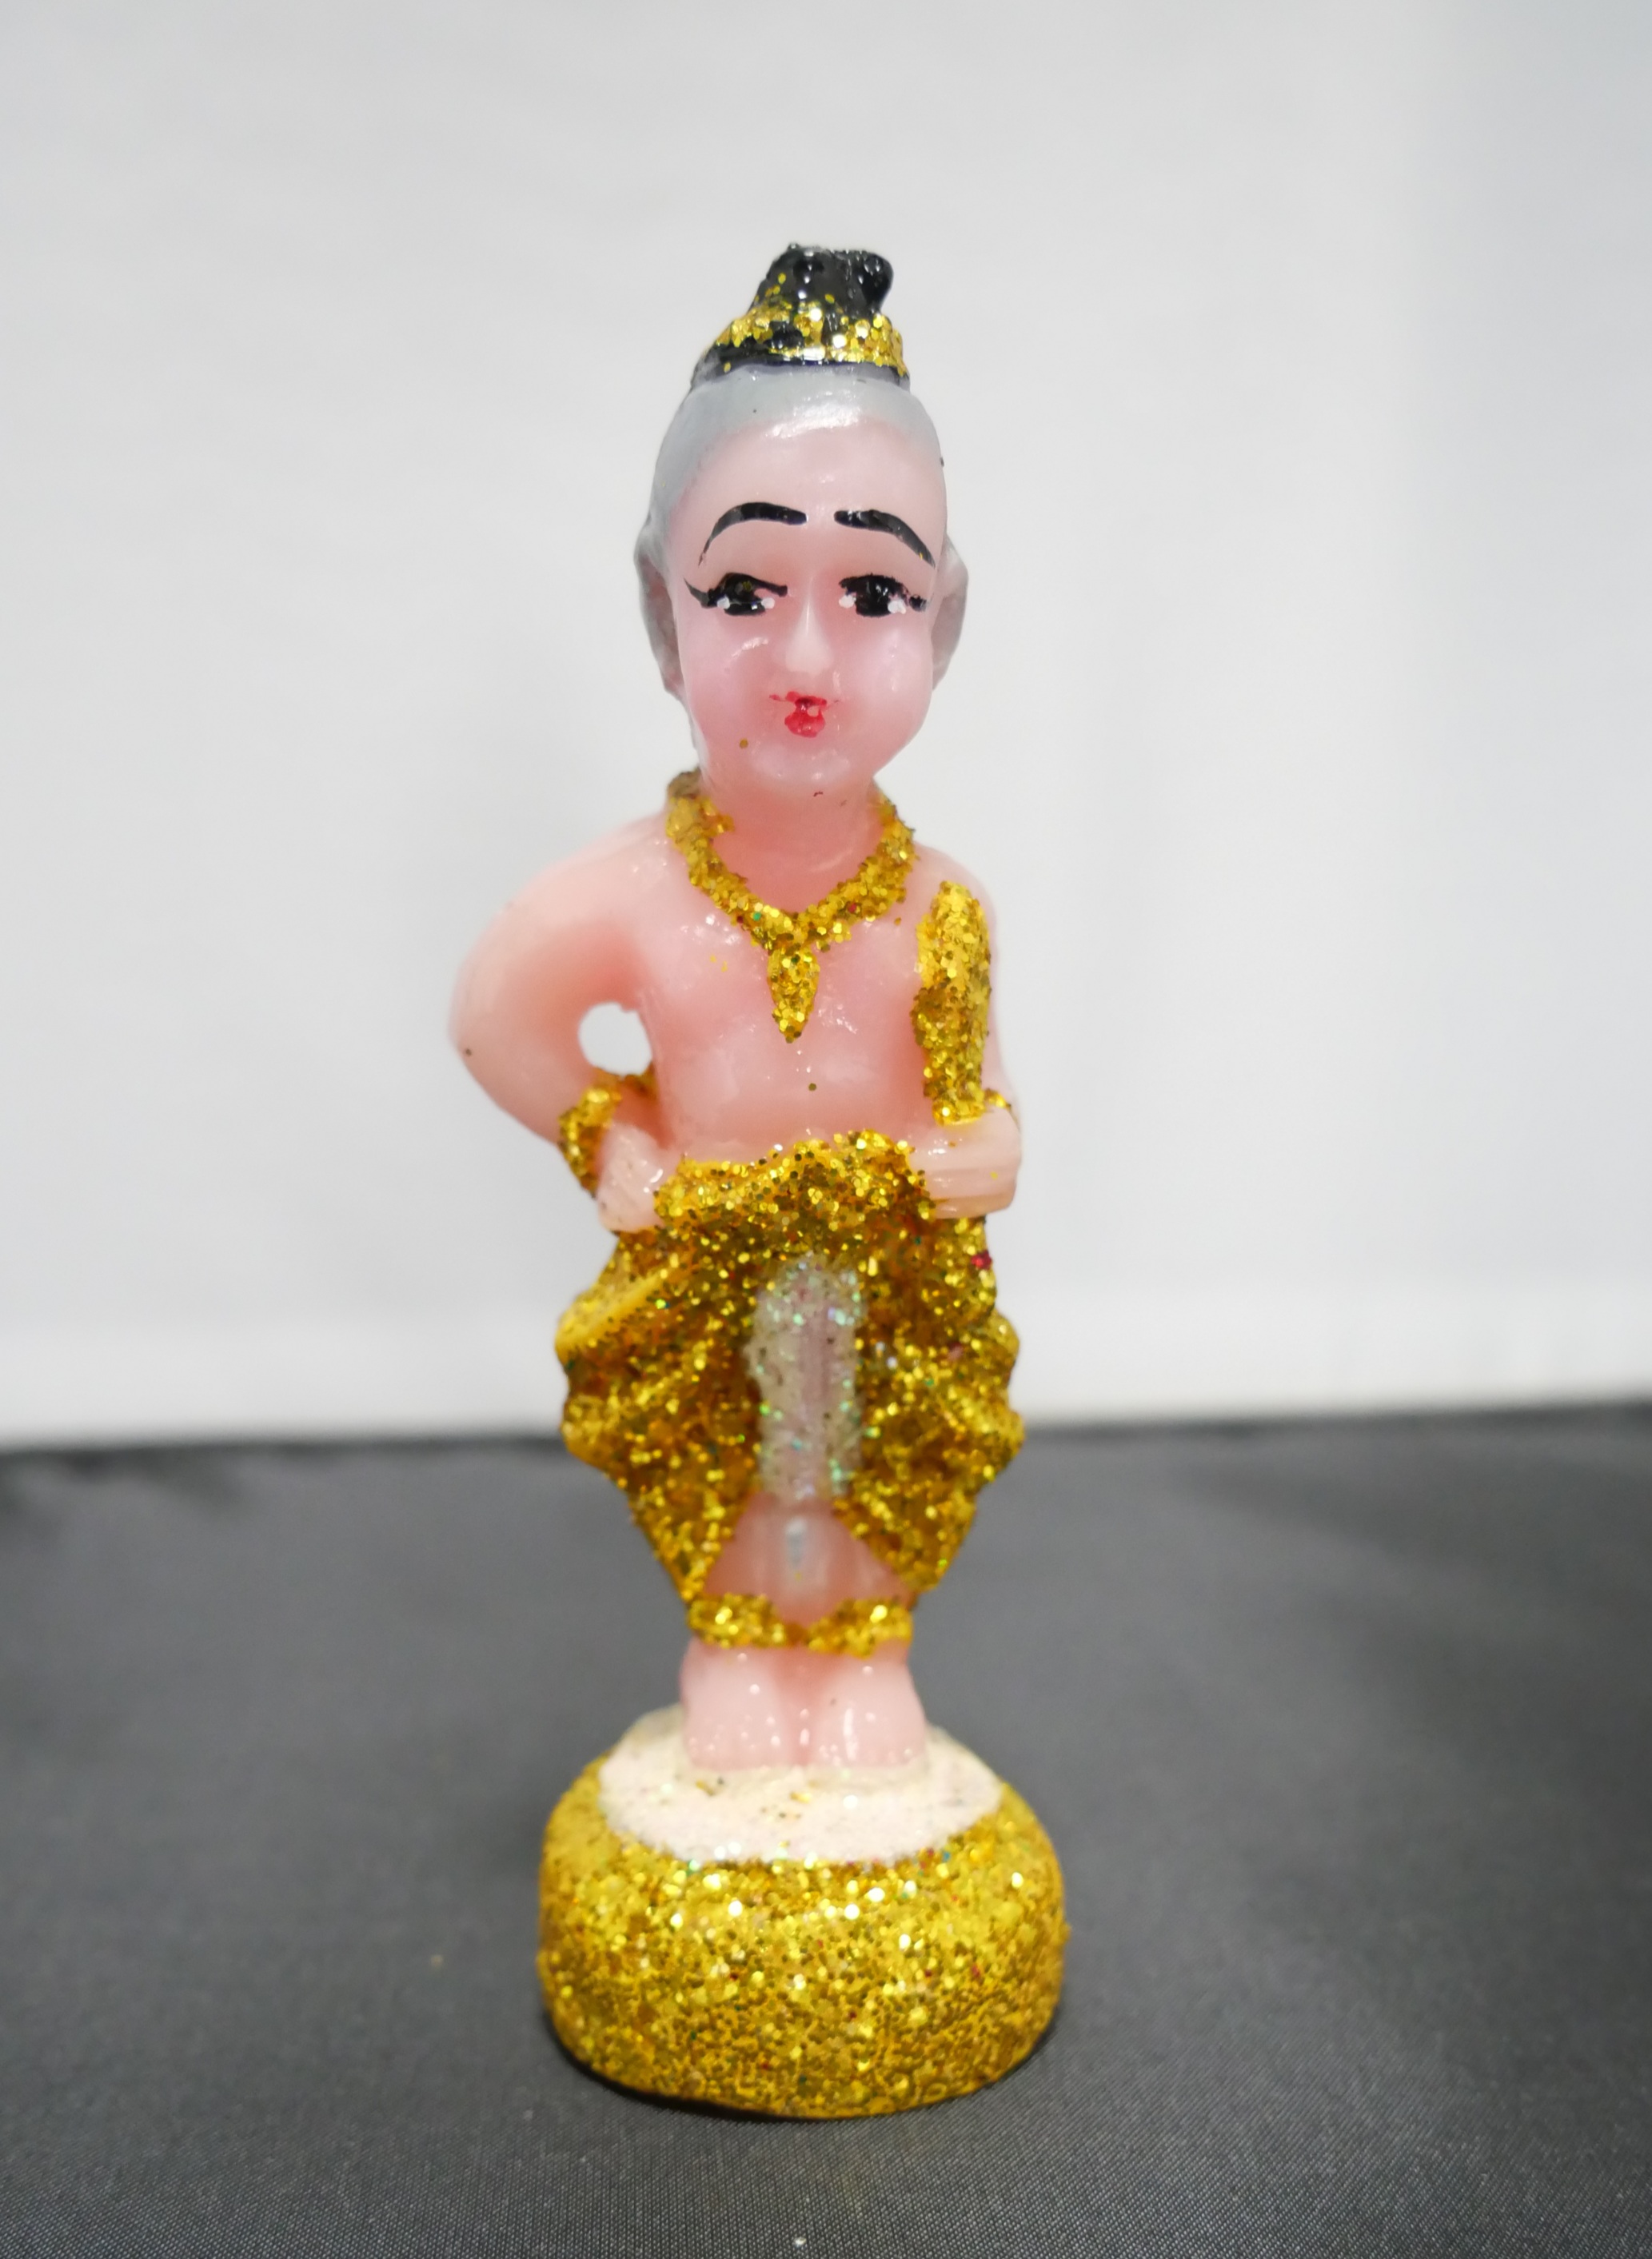 Kuman Thong Little Guardian Angel Made in Thailand